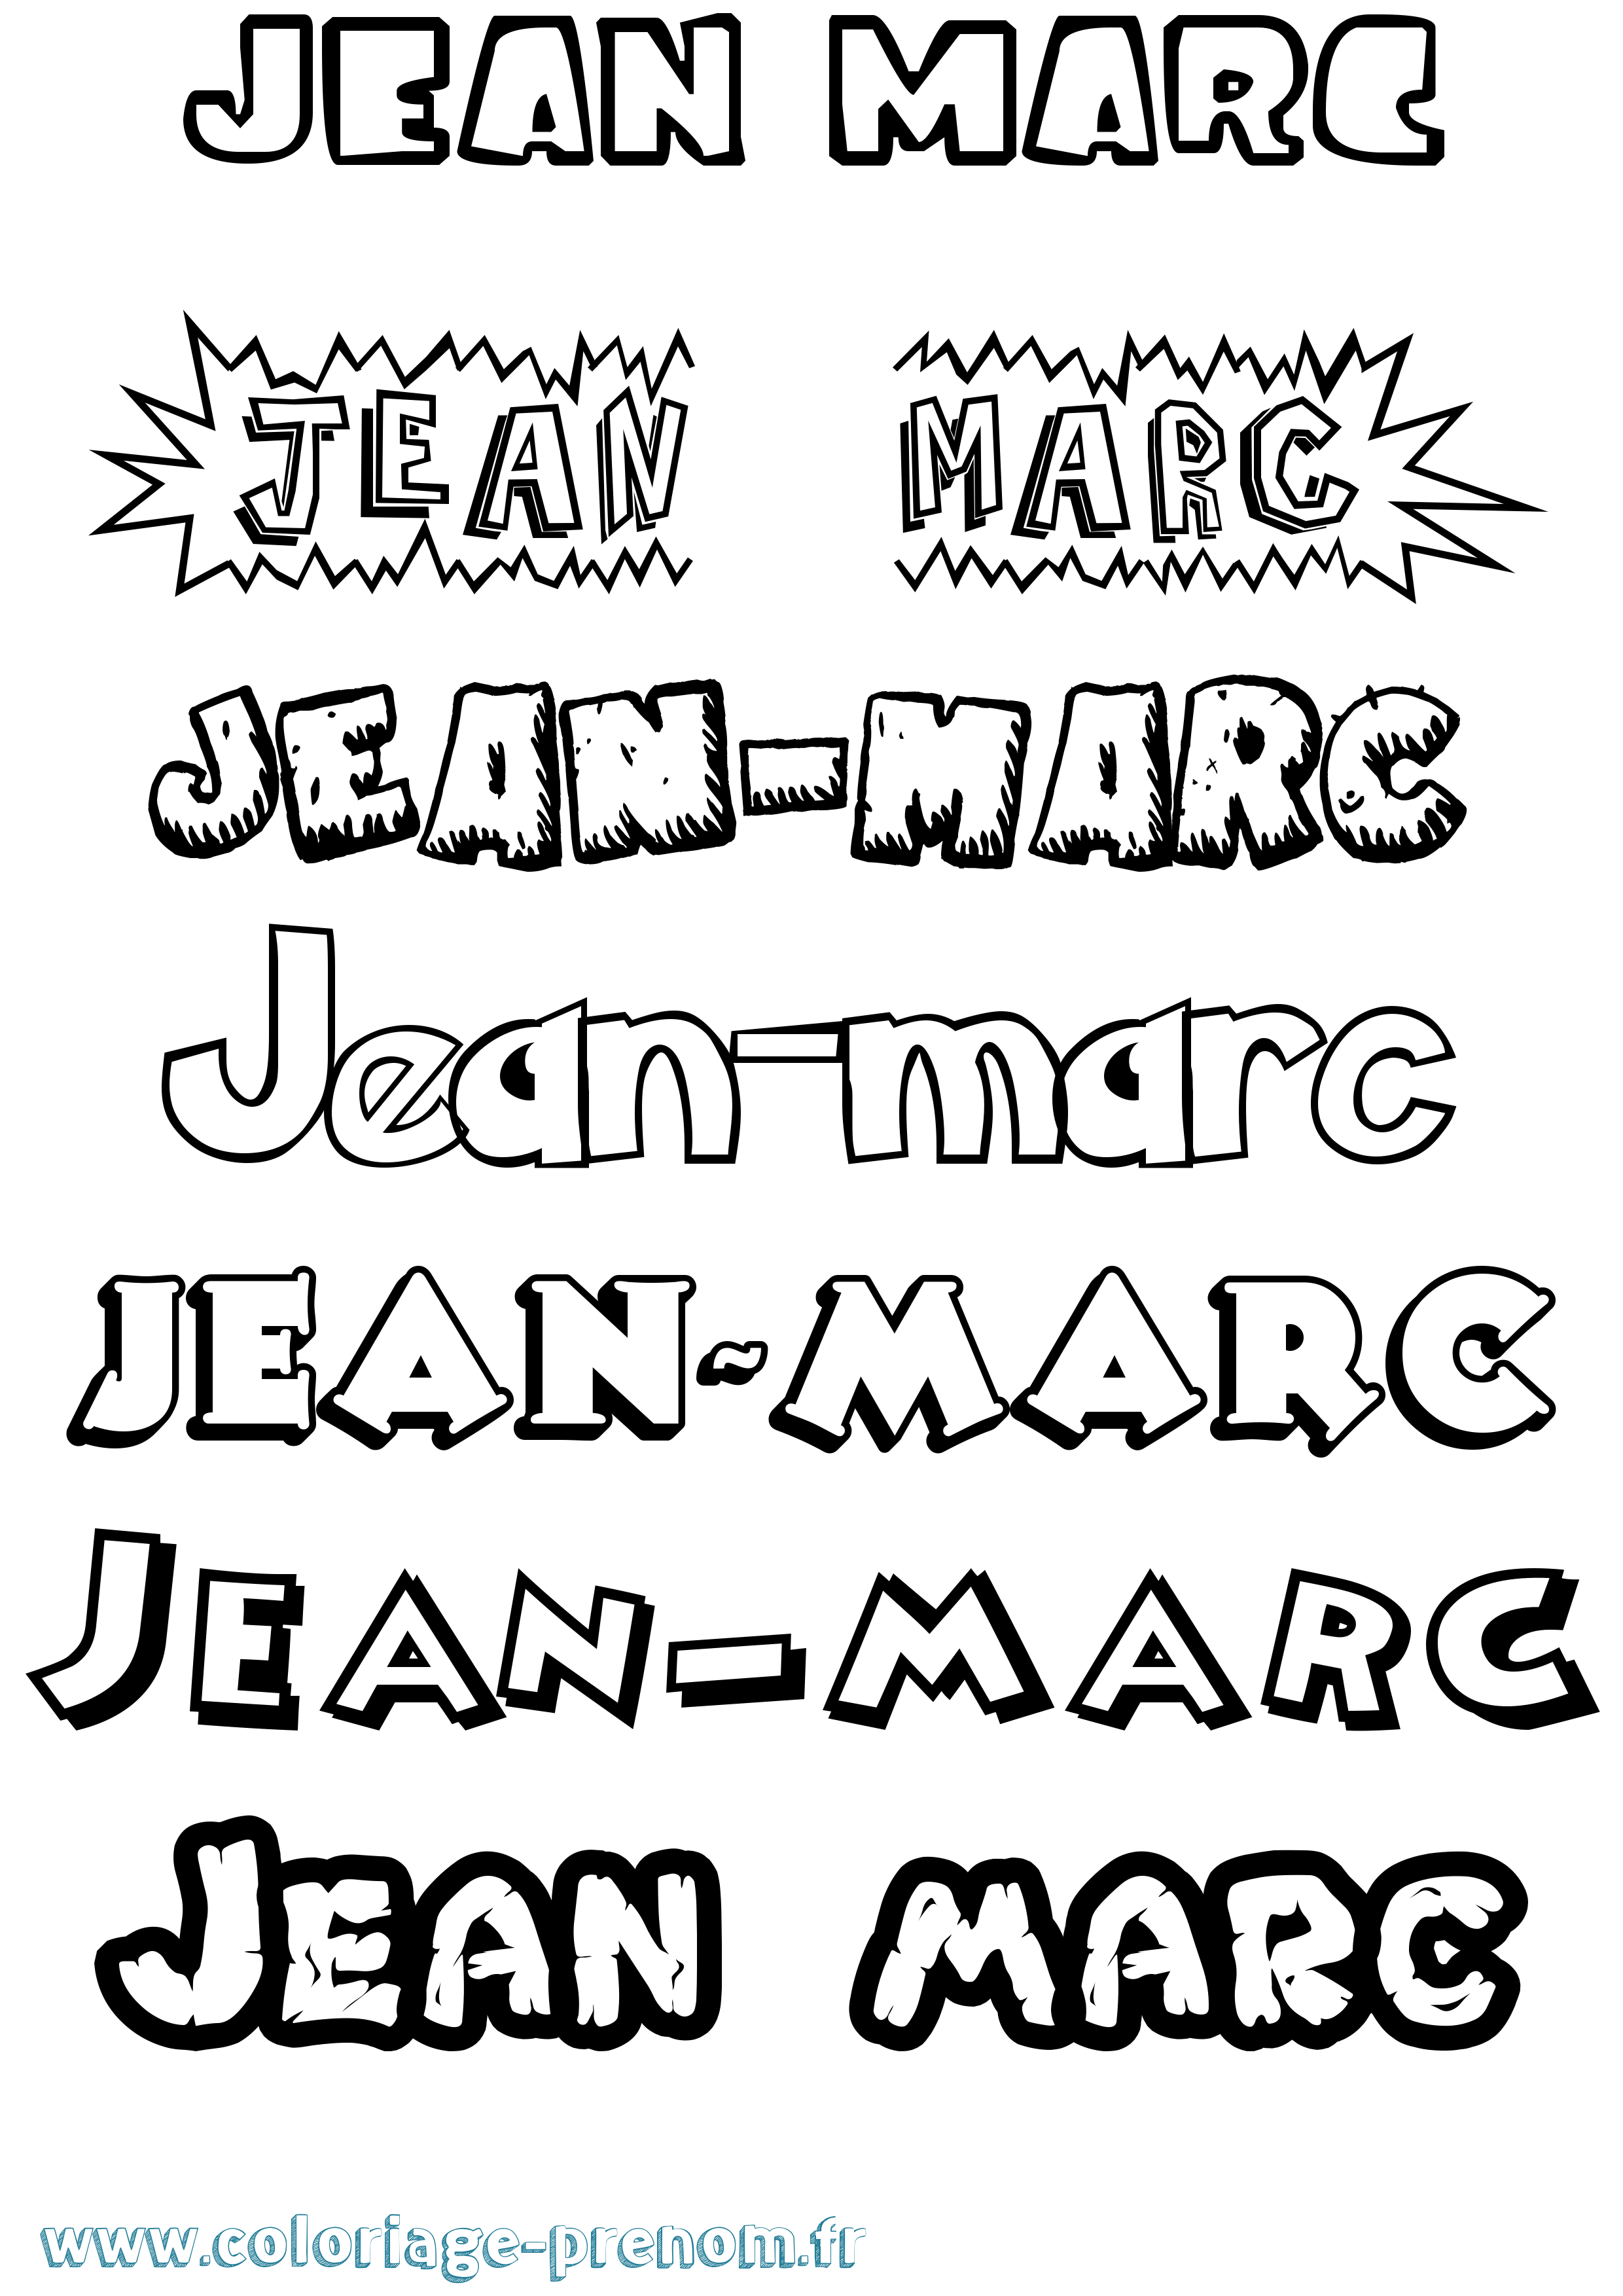 Coloriage prénom Jean-Marc